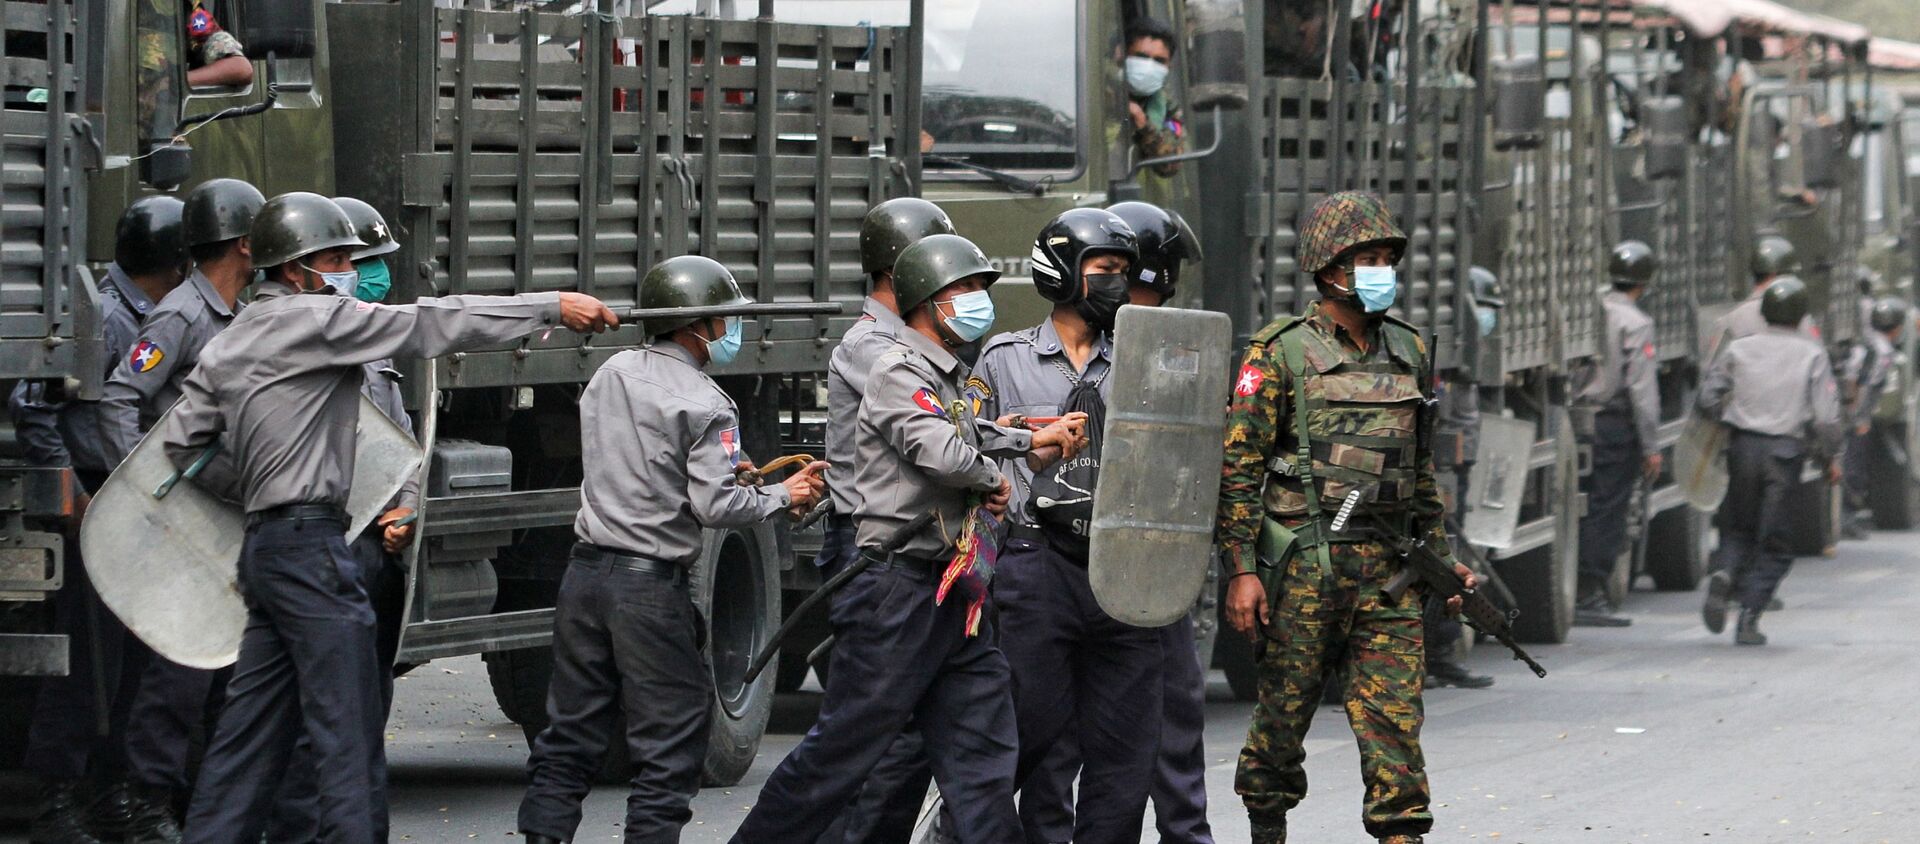 Cảnh sát và binh lính được nhìn thấy trong một cuộc biểu tình chống lại cuộc đảo chính quân sự, ở Mandalay, Myanmar, ngày 20 tháng 2 năm 2021 - Sputnik Việt Nam, 1920, 28.02.2021